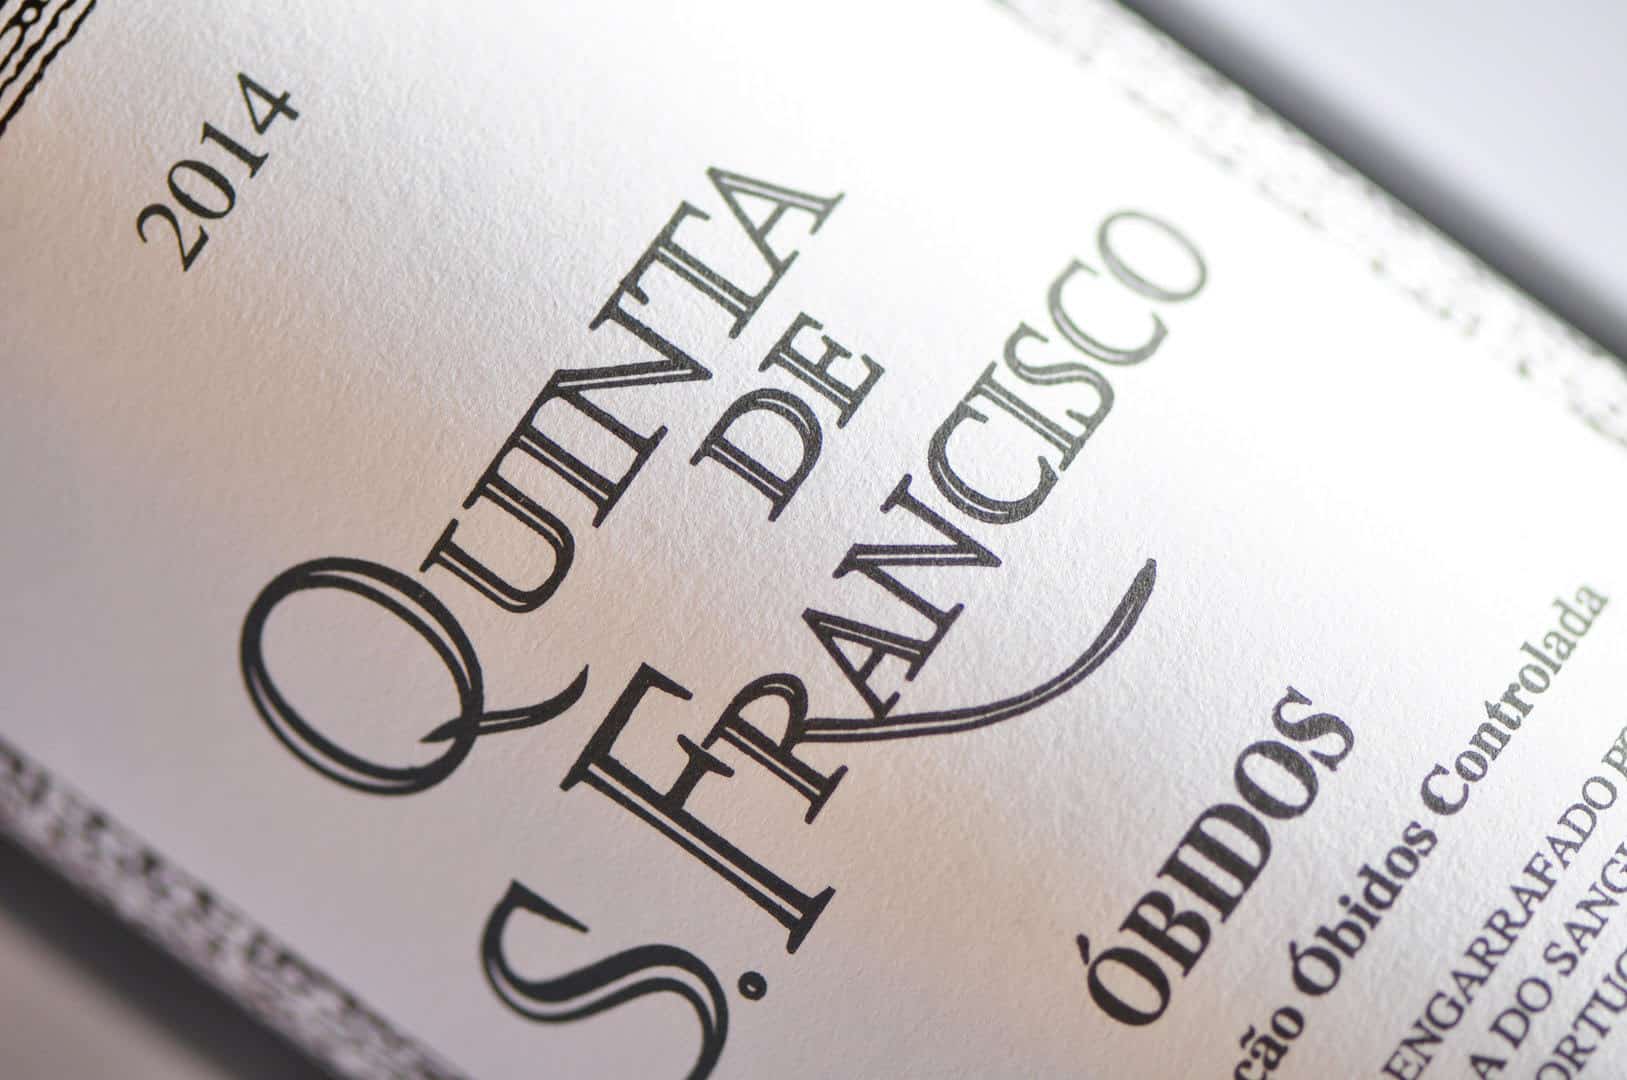 O vinho Quinta de São Francisco em crescente reconhecimento internacional